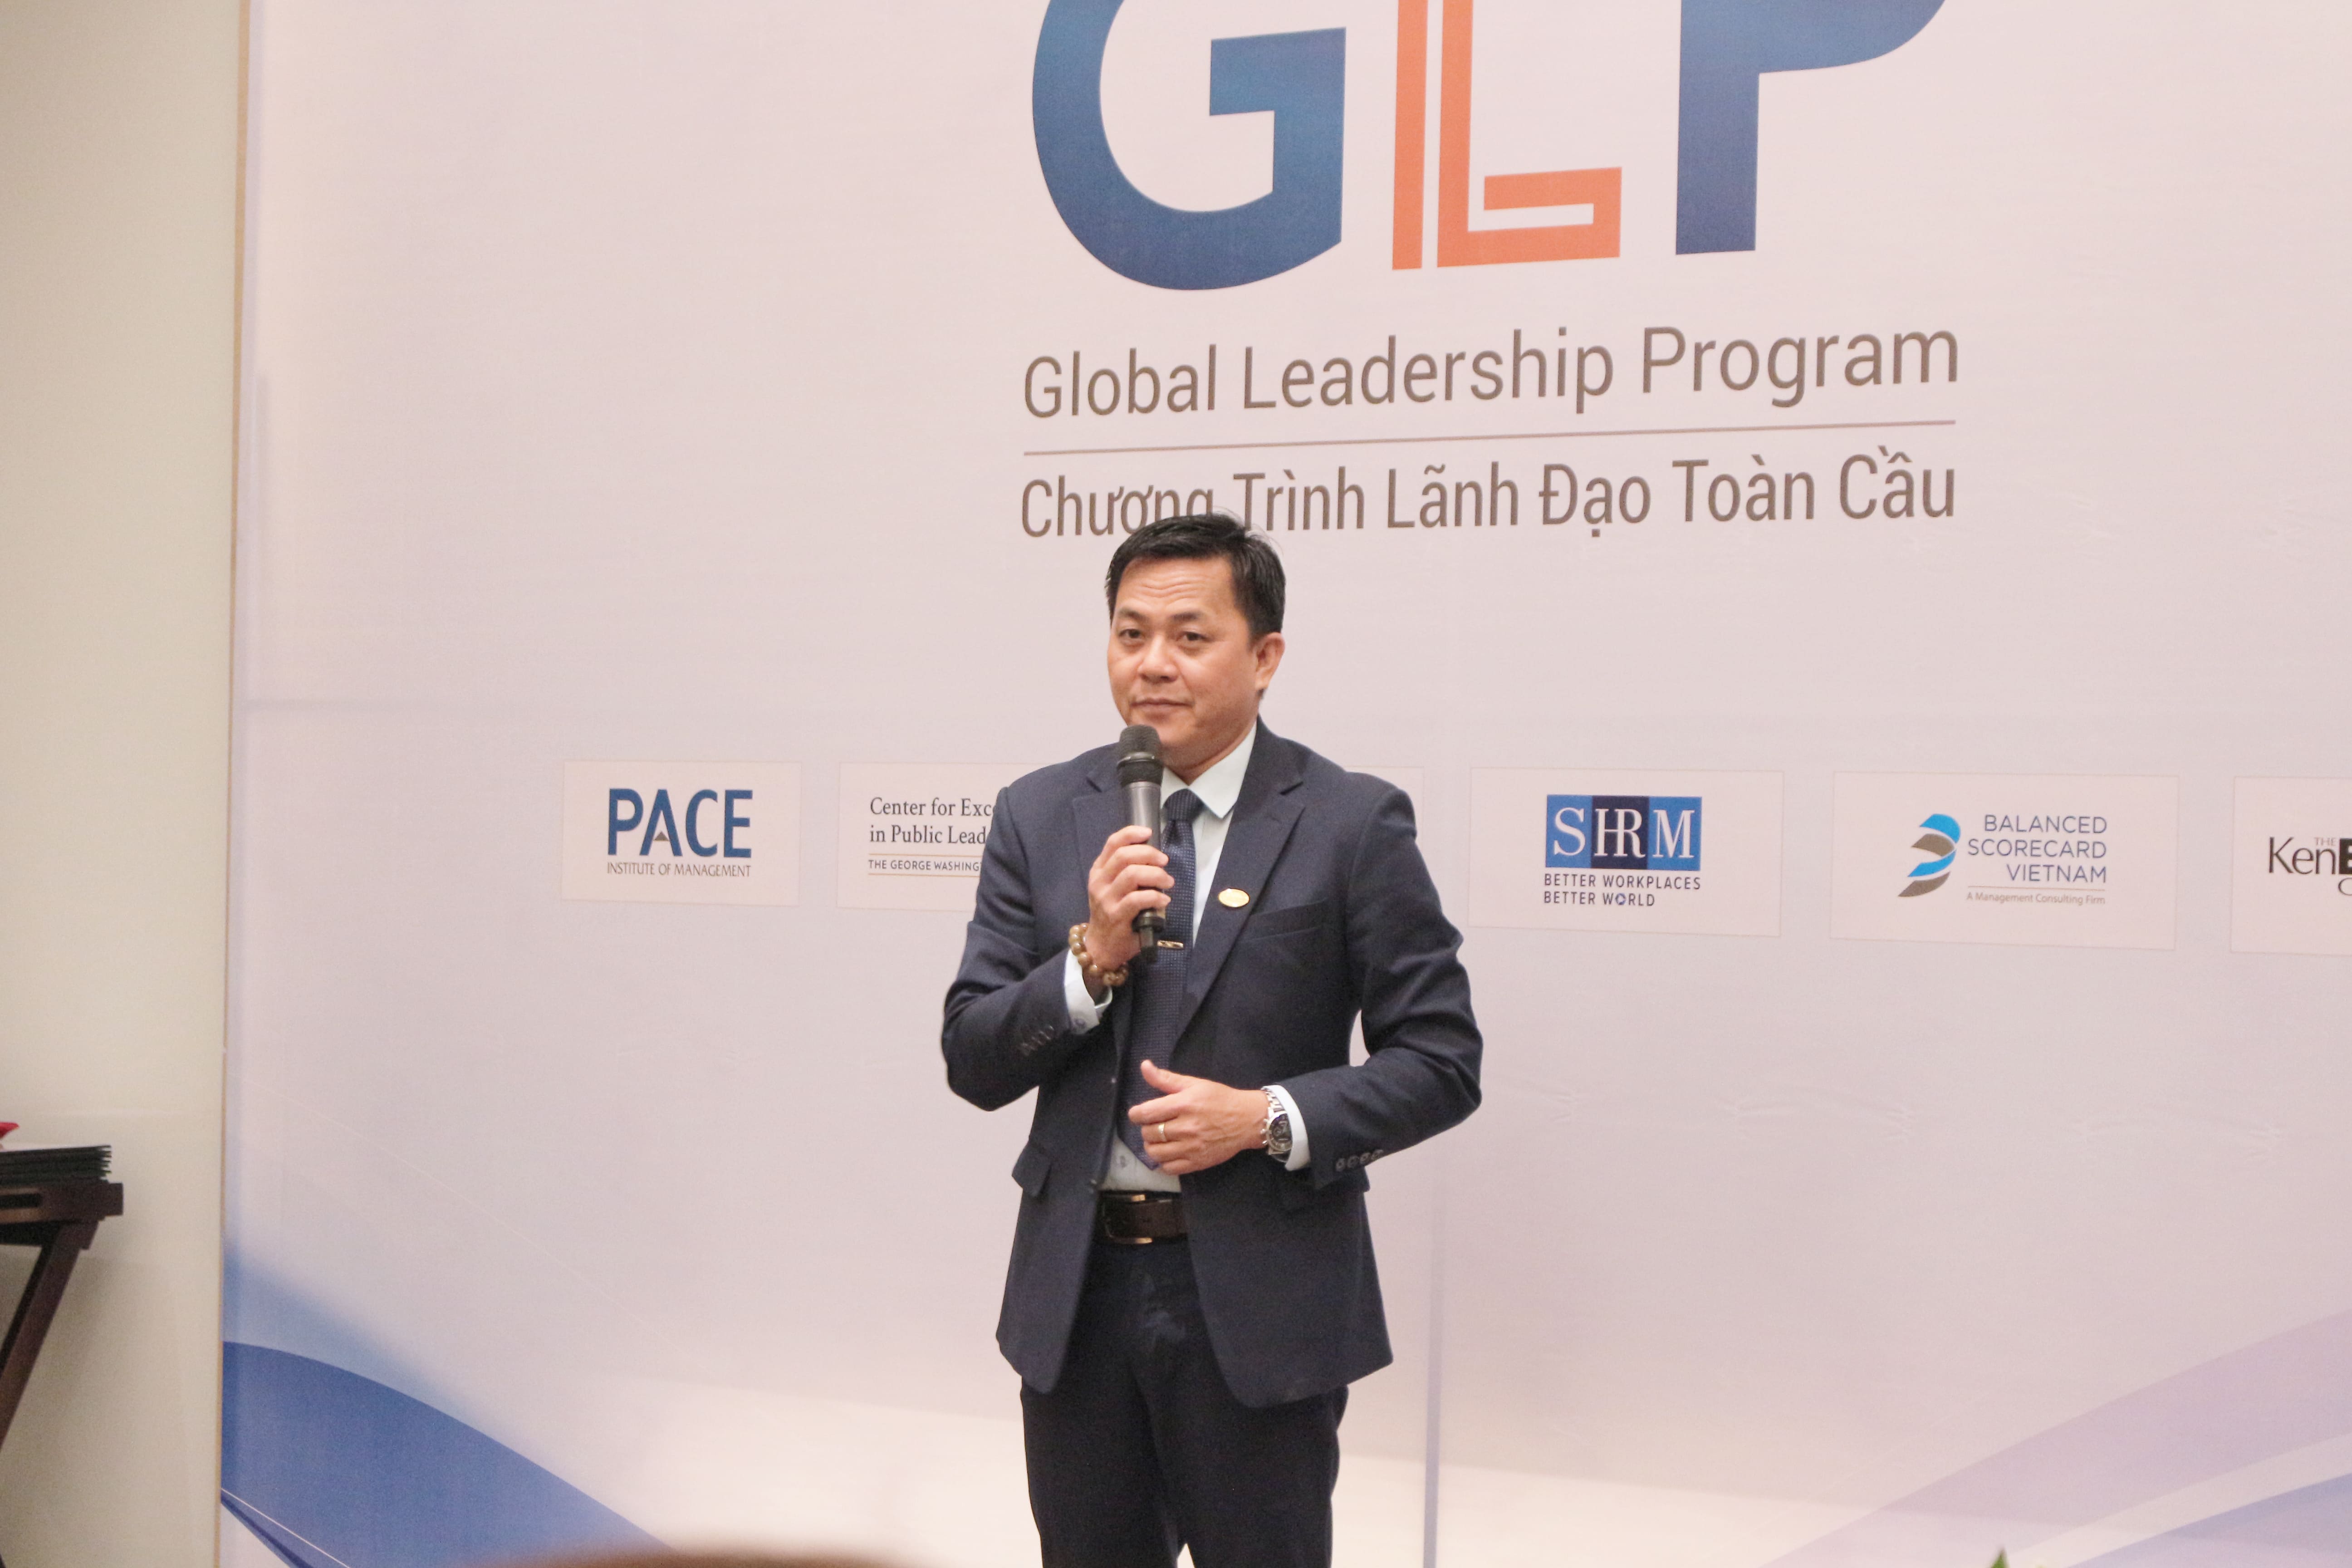 Ông Trần Ngọc Hải: “Học GLP không chỉ là để kiếm nhiều tiền, mà là giúp cho doanh nghiệp xây dựng được những giá trị cốt lõi.”